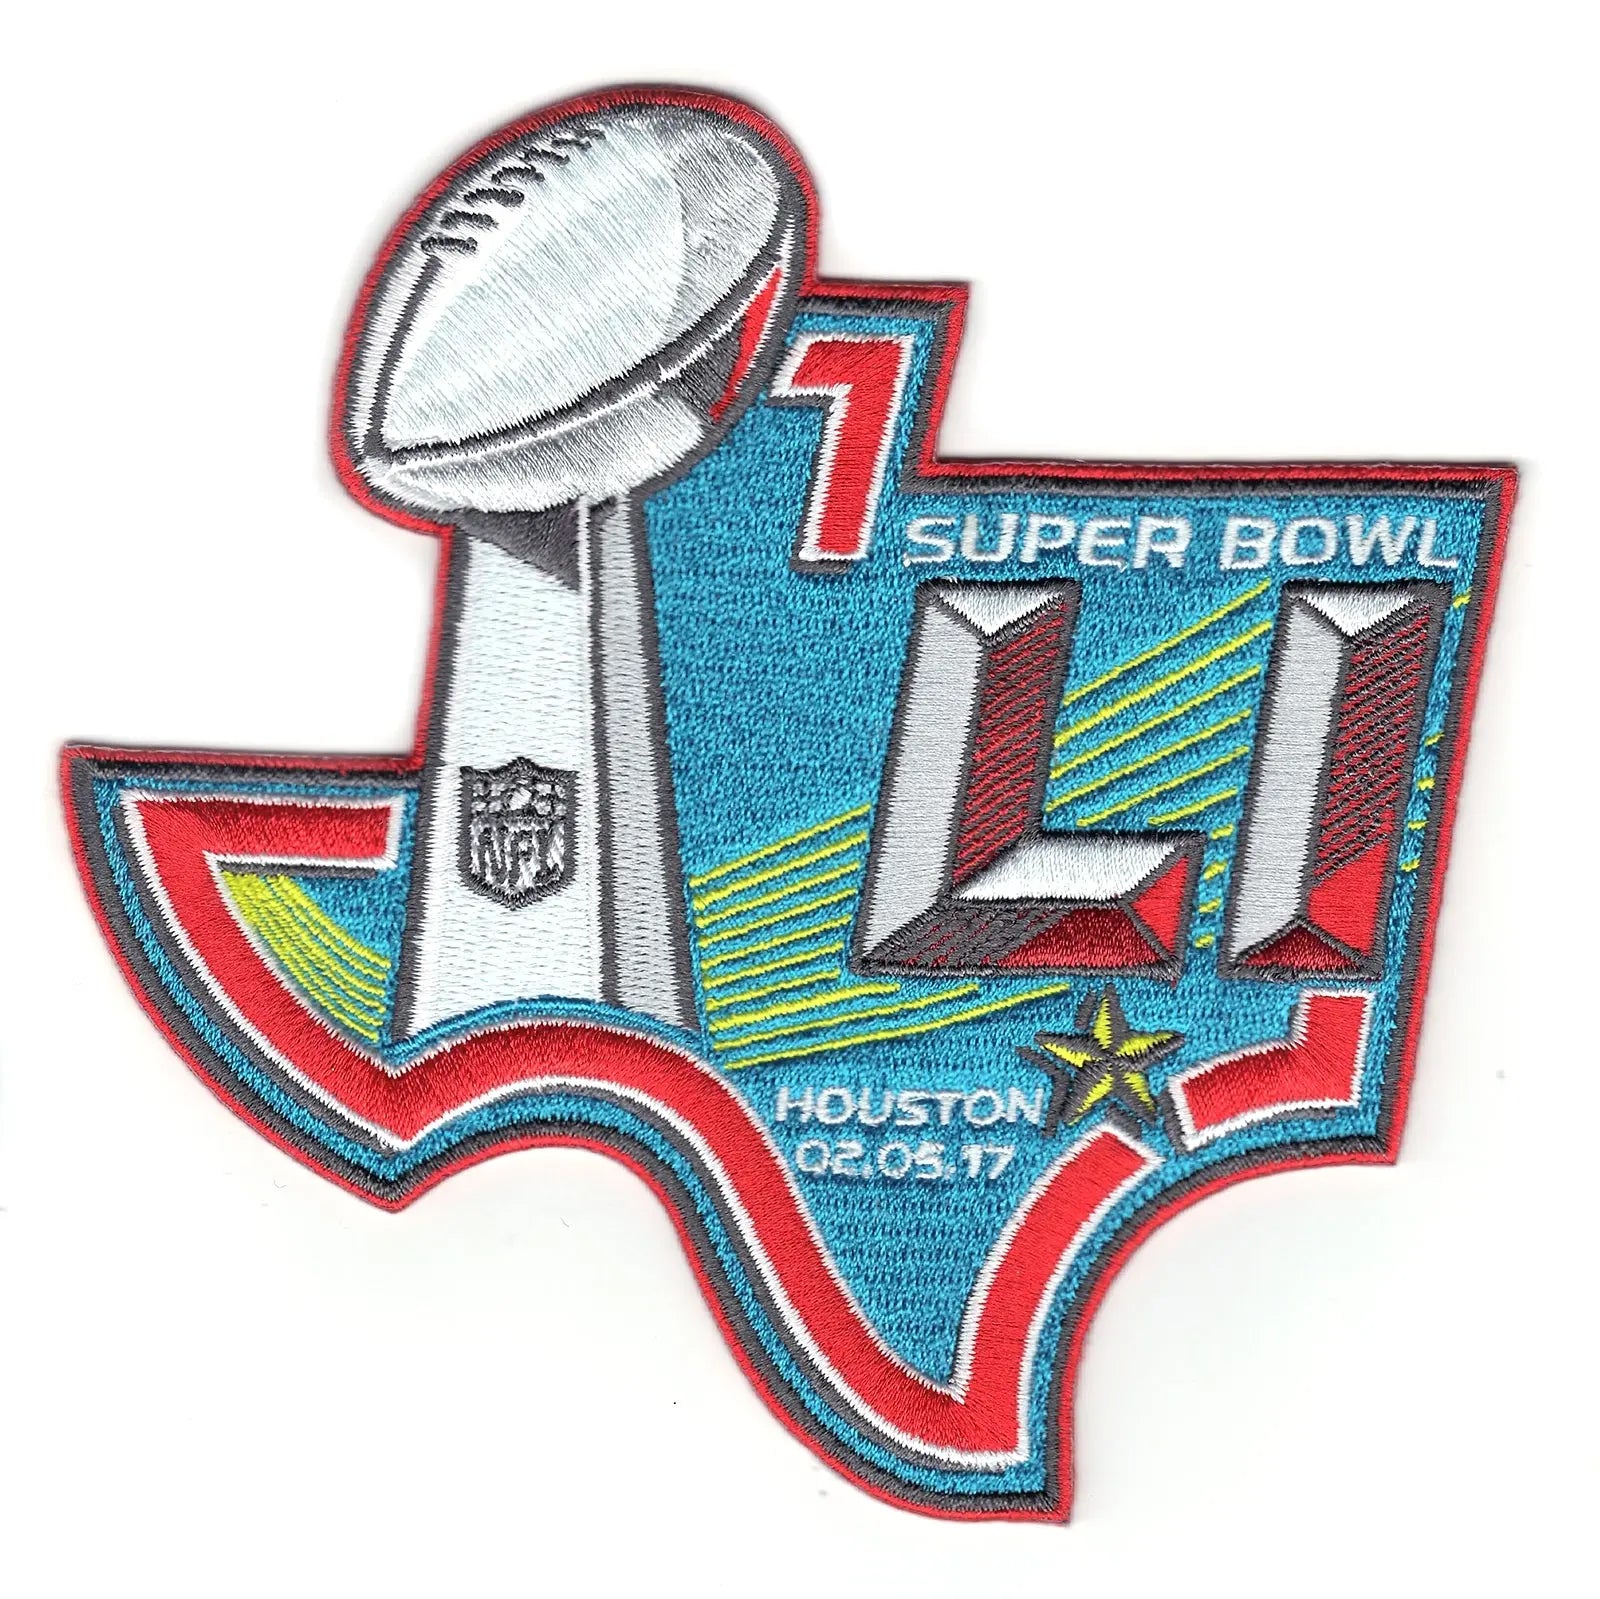 2017 NFL Super Bowl LI 51 Media Patch Atlanta Falcons Vs. New England Patriots (Houston) 